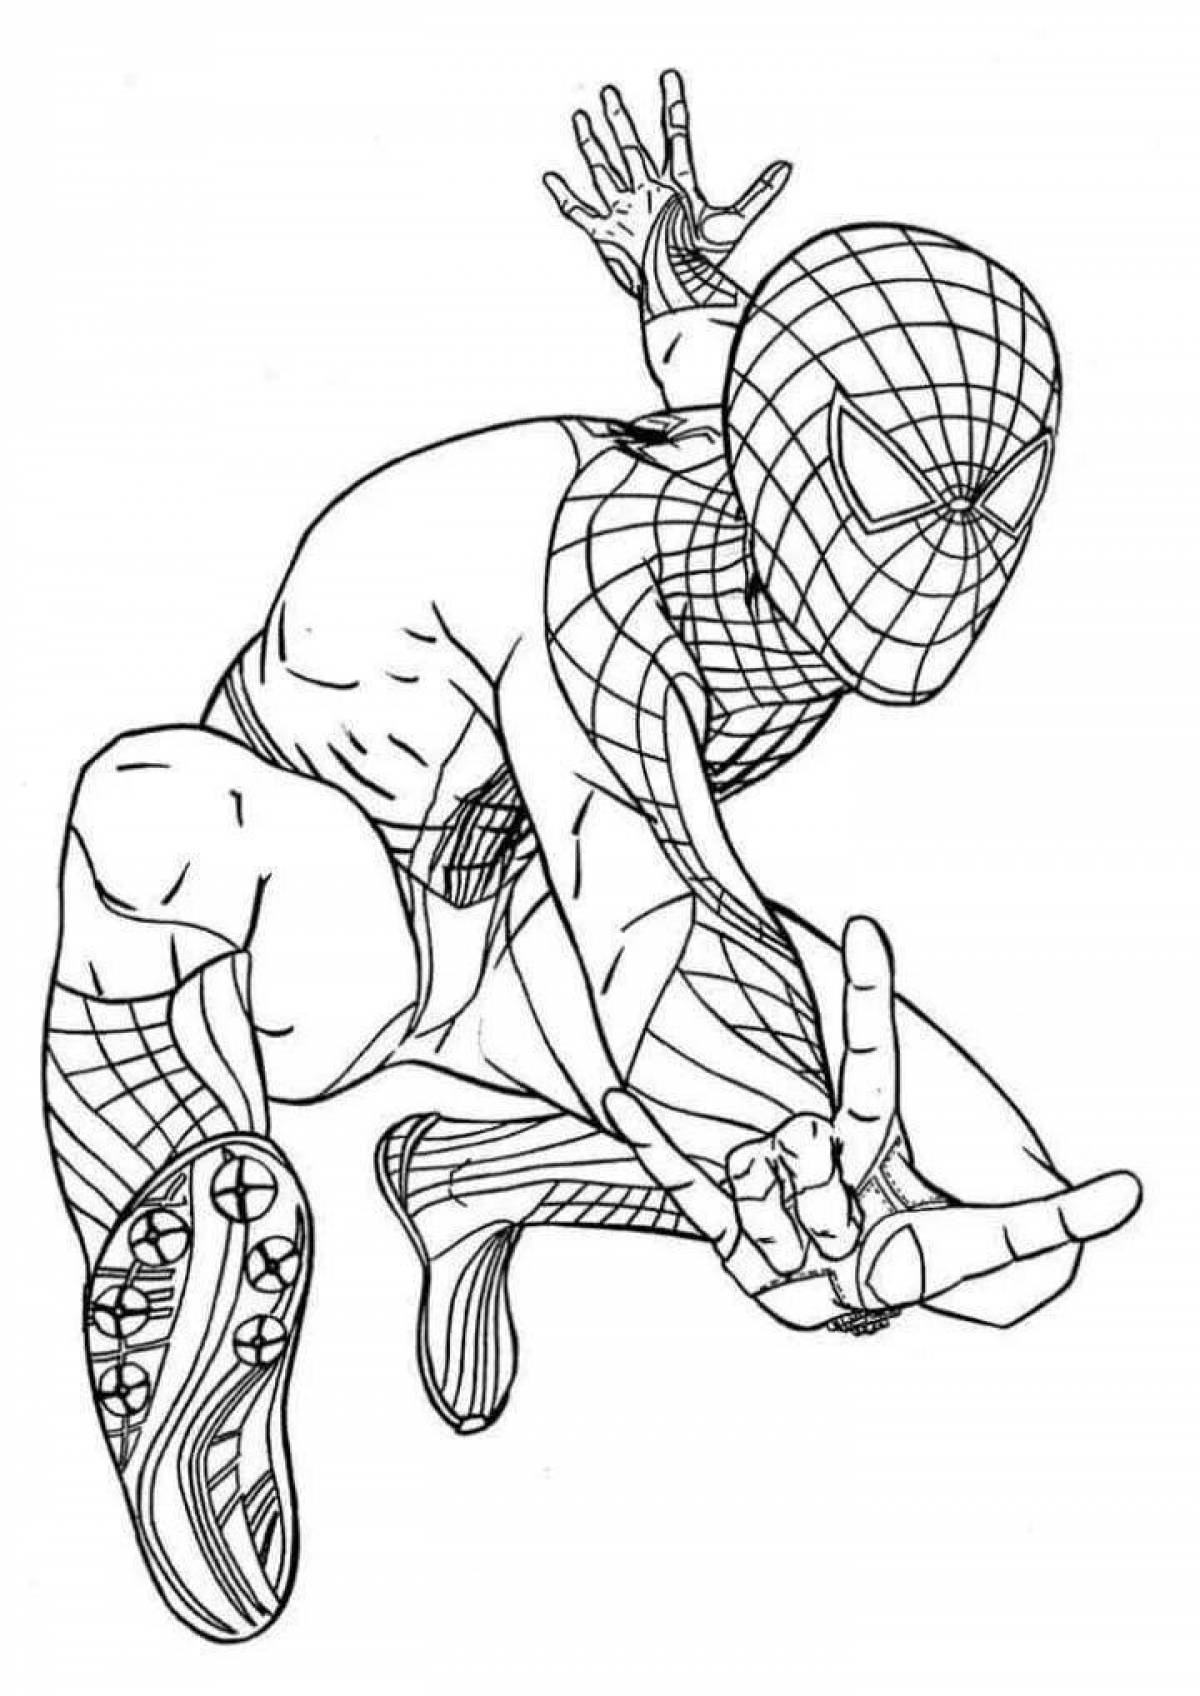 Сказочная раскраска человека-паука для детей 6-7 лет